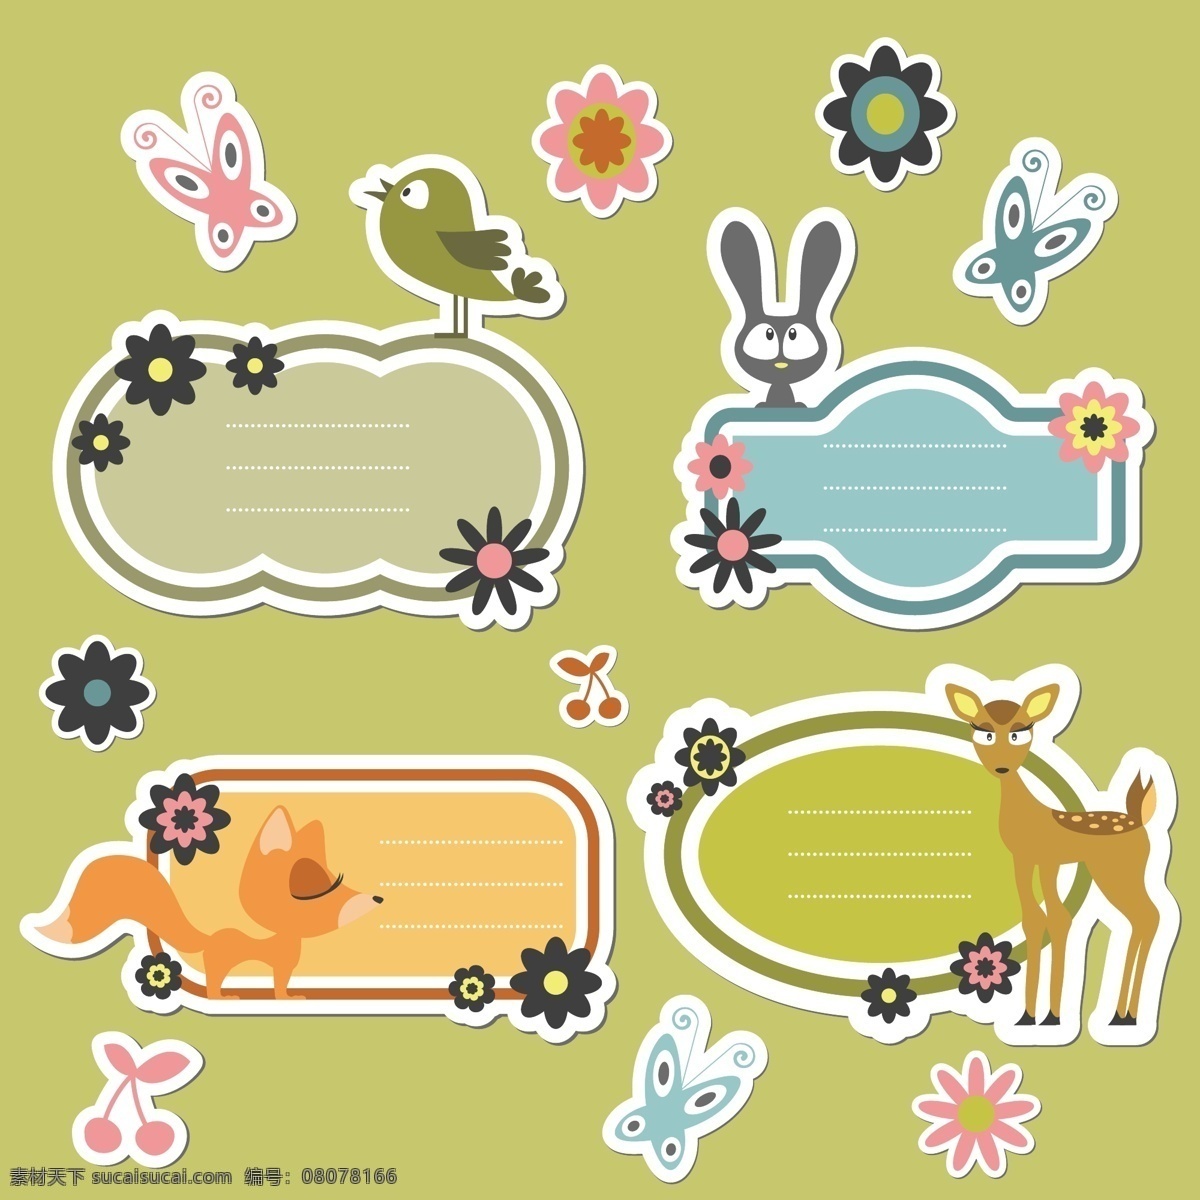 彩色对话框 动物 花朵 蝴蝶 小鸟 鹿 兔子 圆形框 对话框 文字边框 装饰 绿色